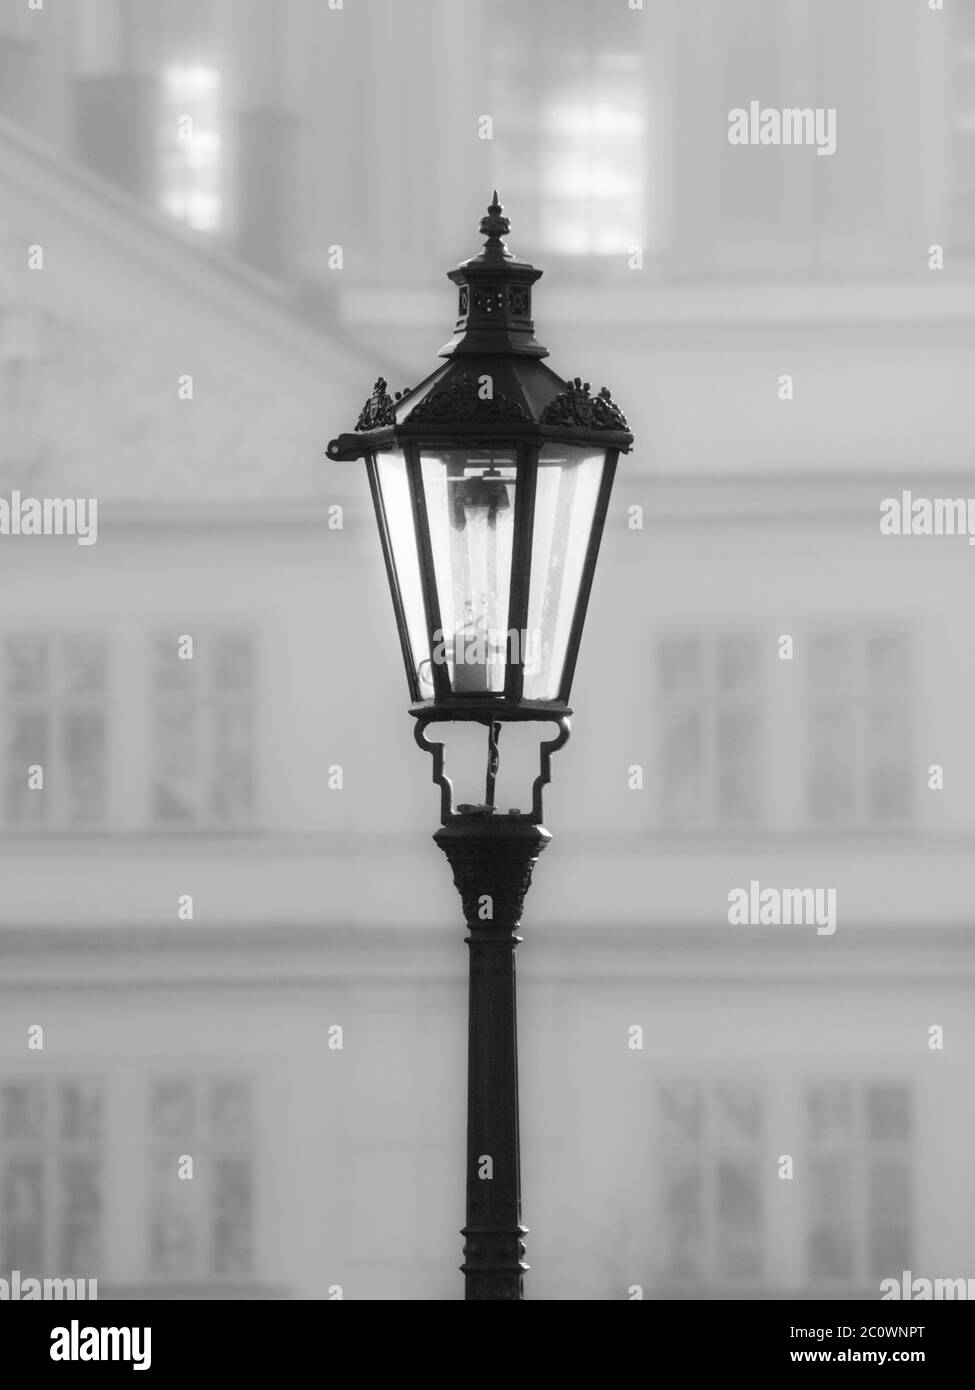 Lampada di strada sul Ponte Carlo in mattinata nebbia, Praga, Repubblica Ceca. Immagine in bianco e nero. Foto Stock